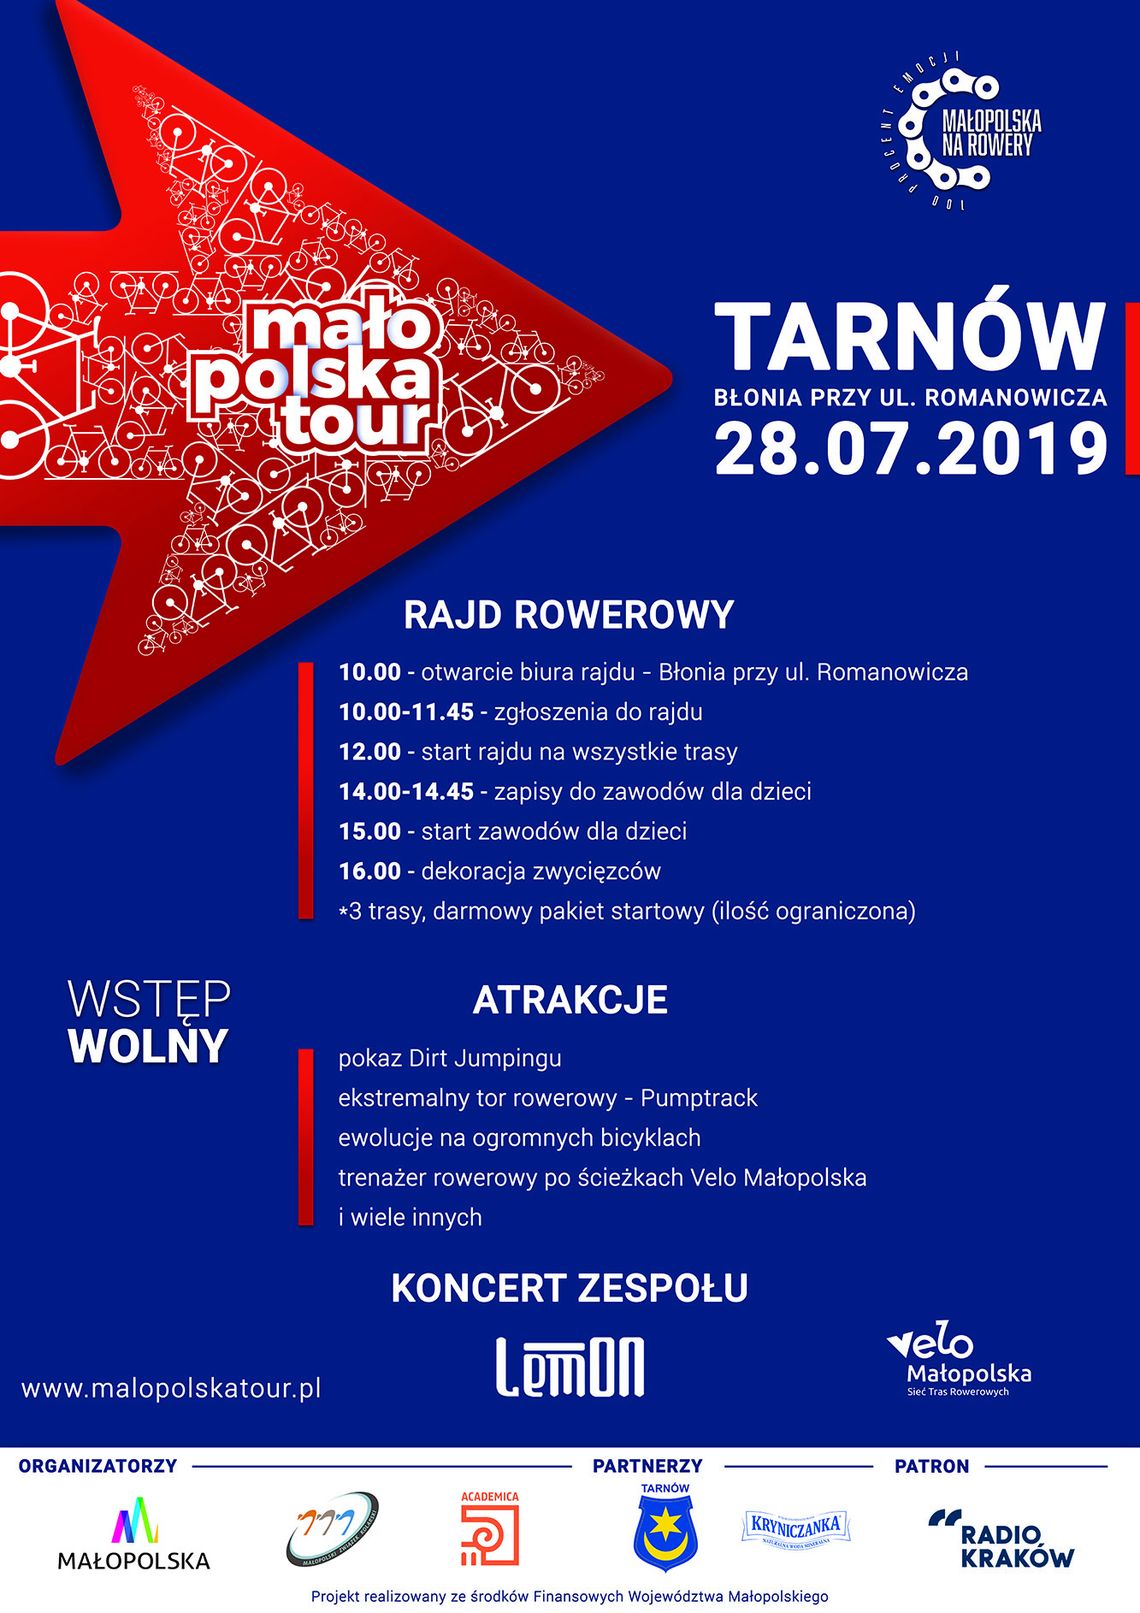 Małopolska Tour w Tarnowie